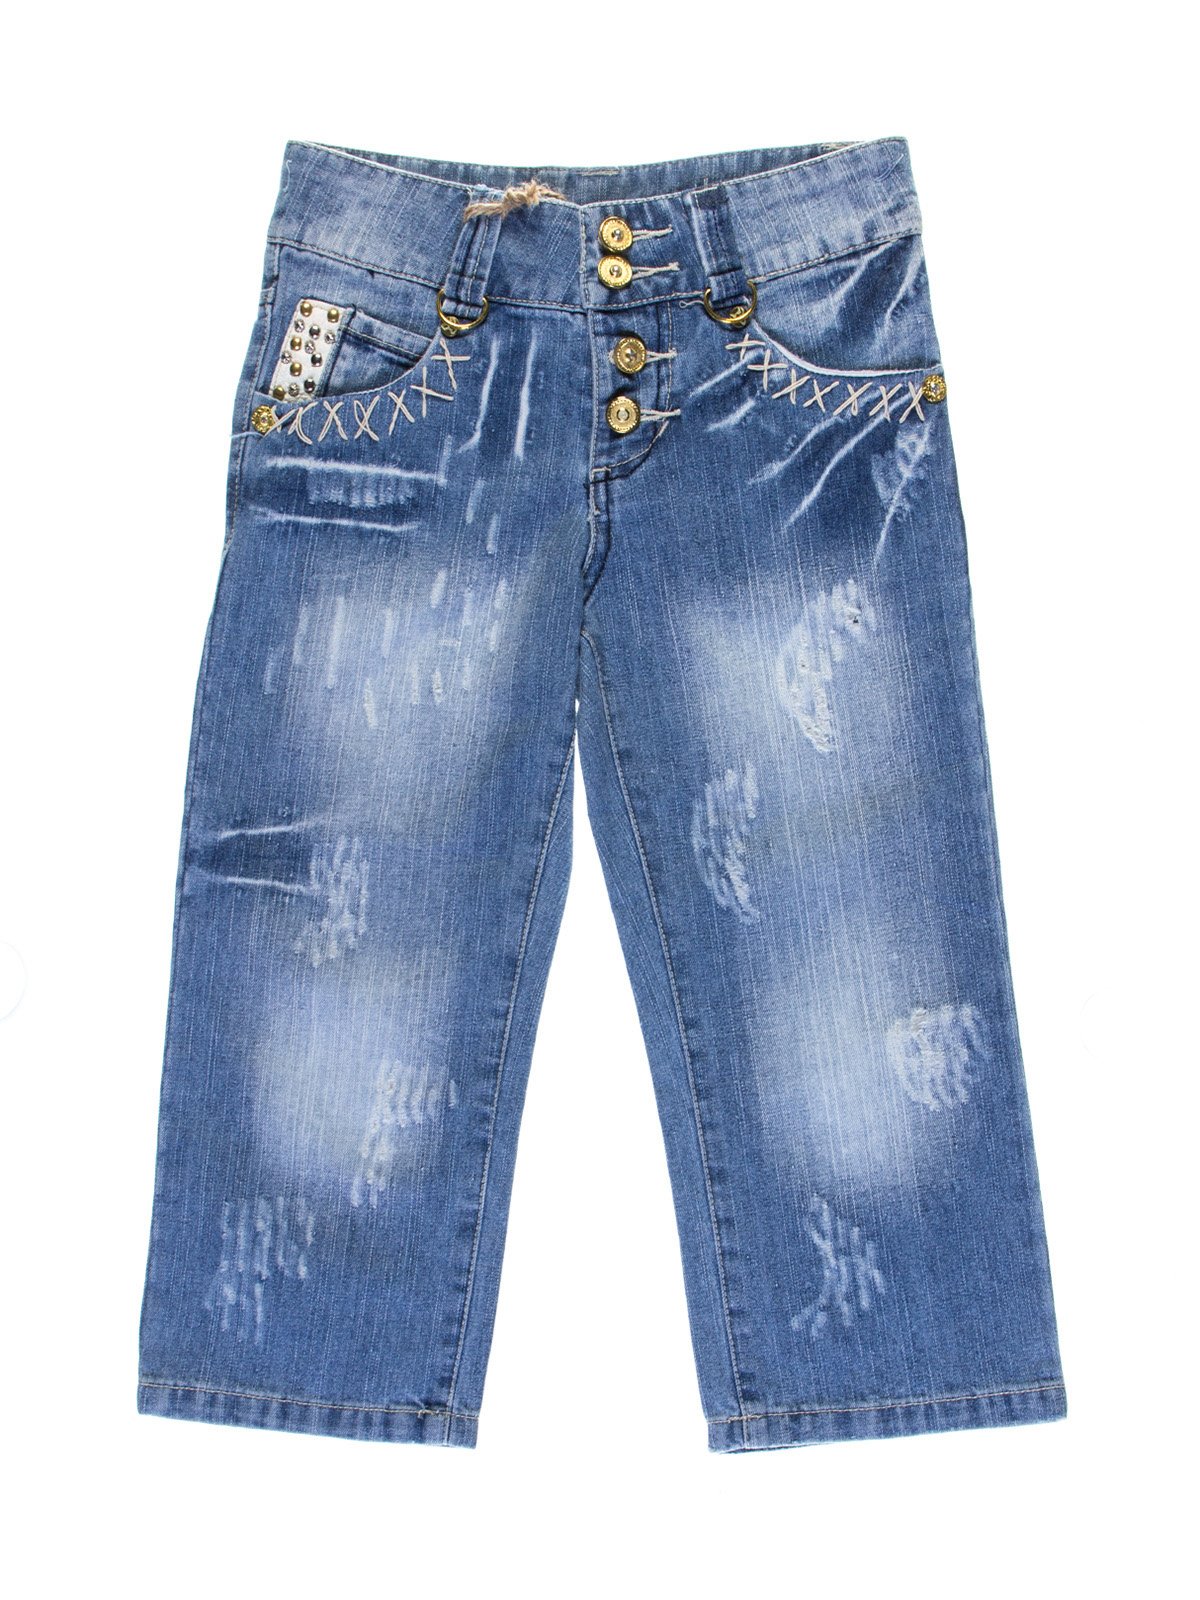 Капри синие джинсовые с эффектом потертых | 1076935